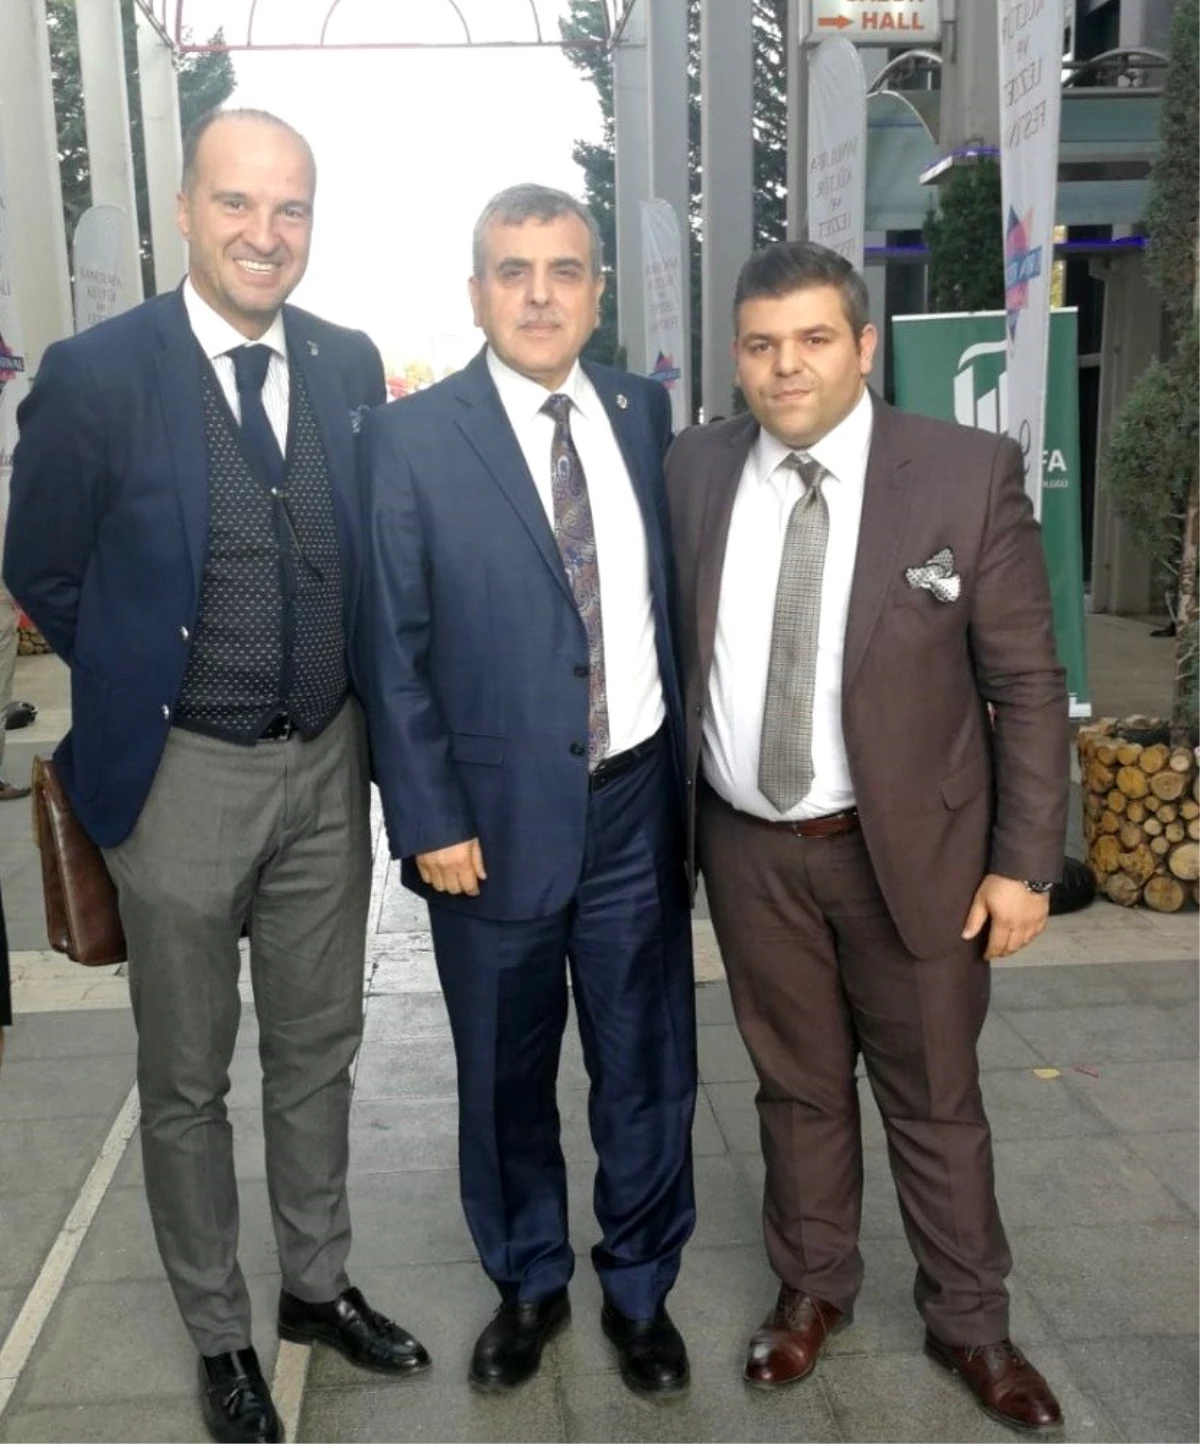 Turizm kültür elçisi Eryavuz, tanıtımın önemine dikkat çekti